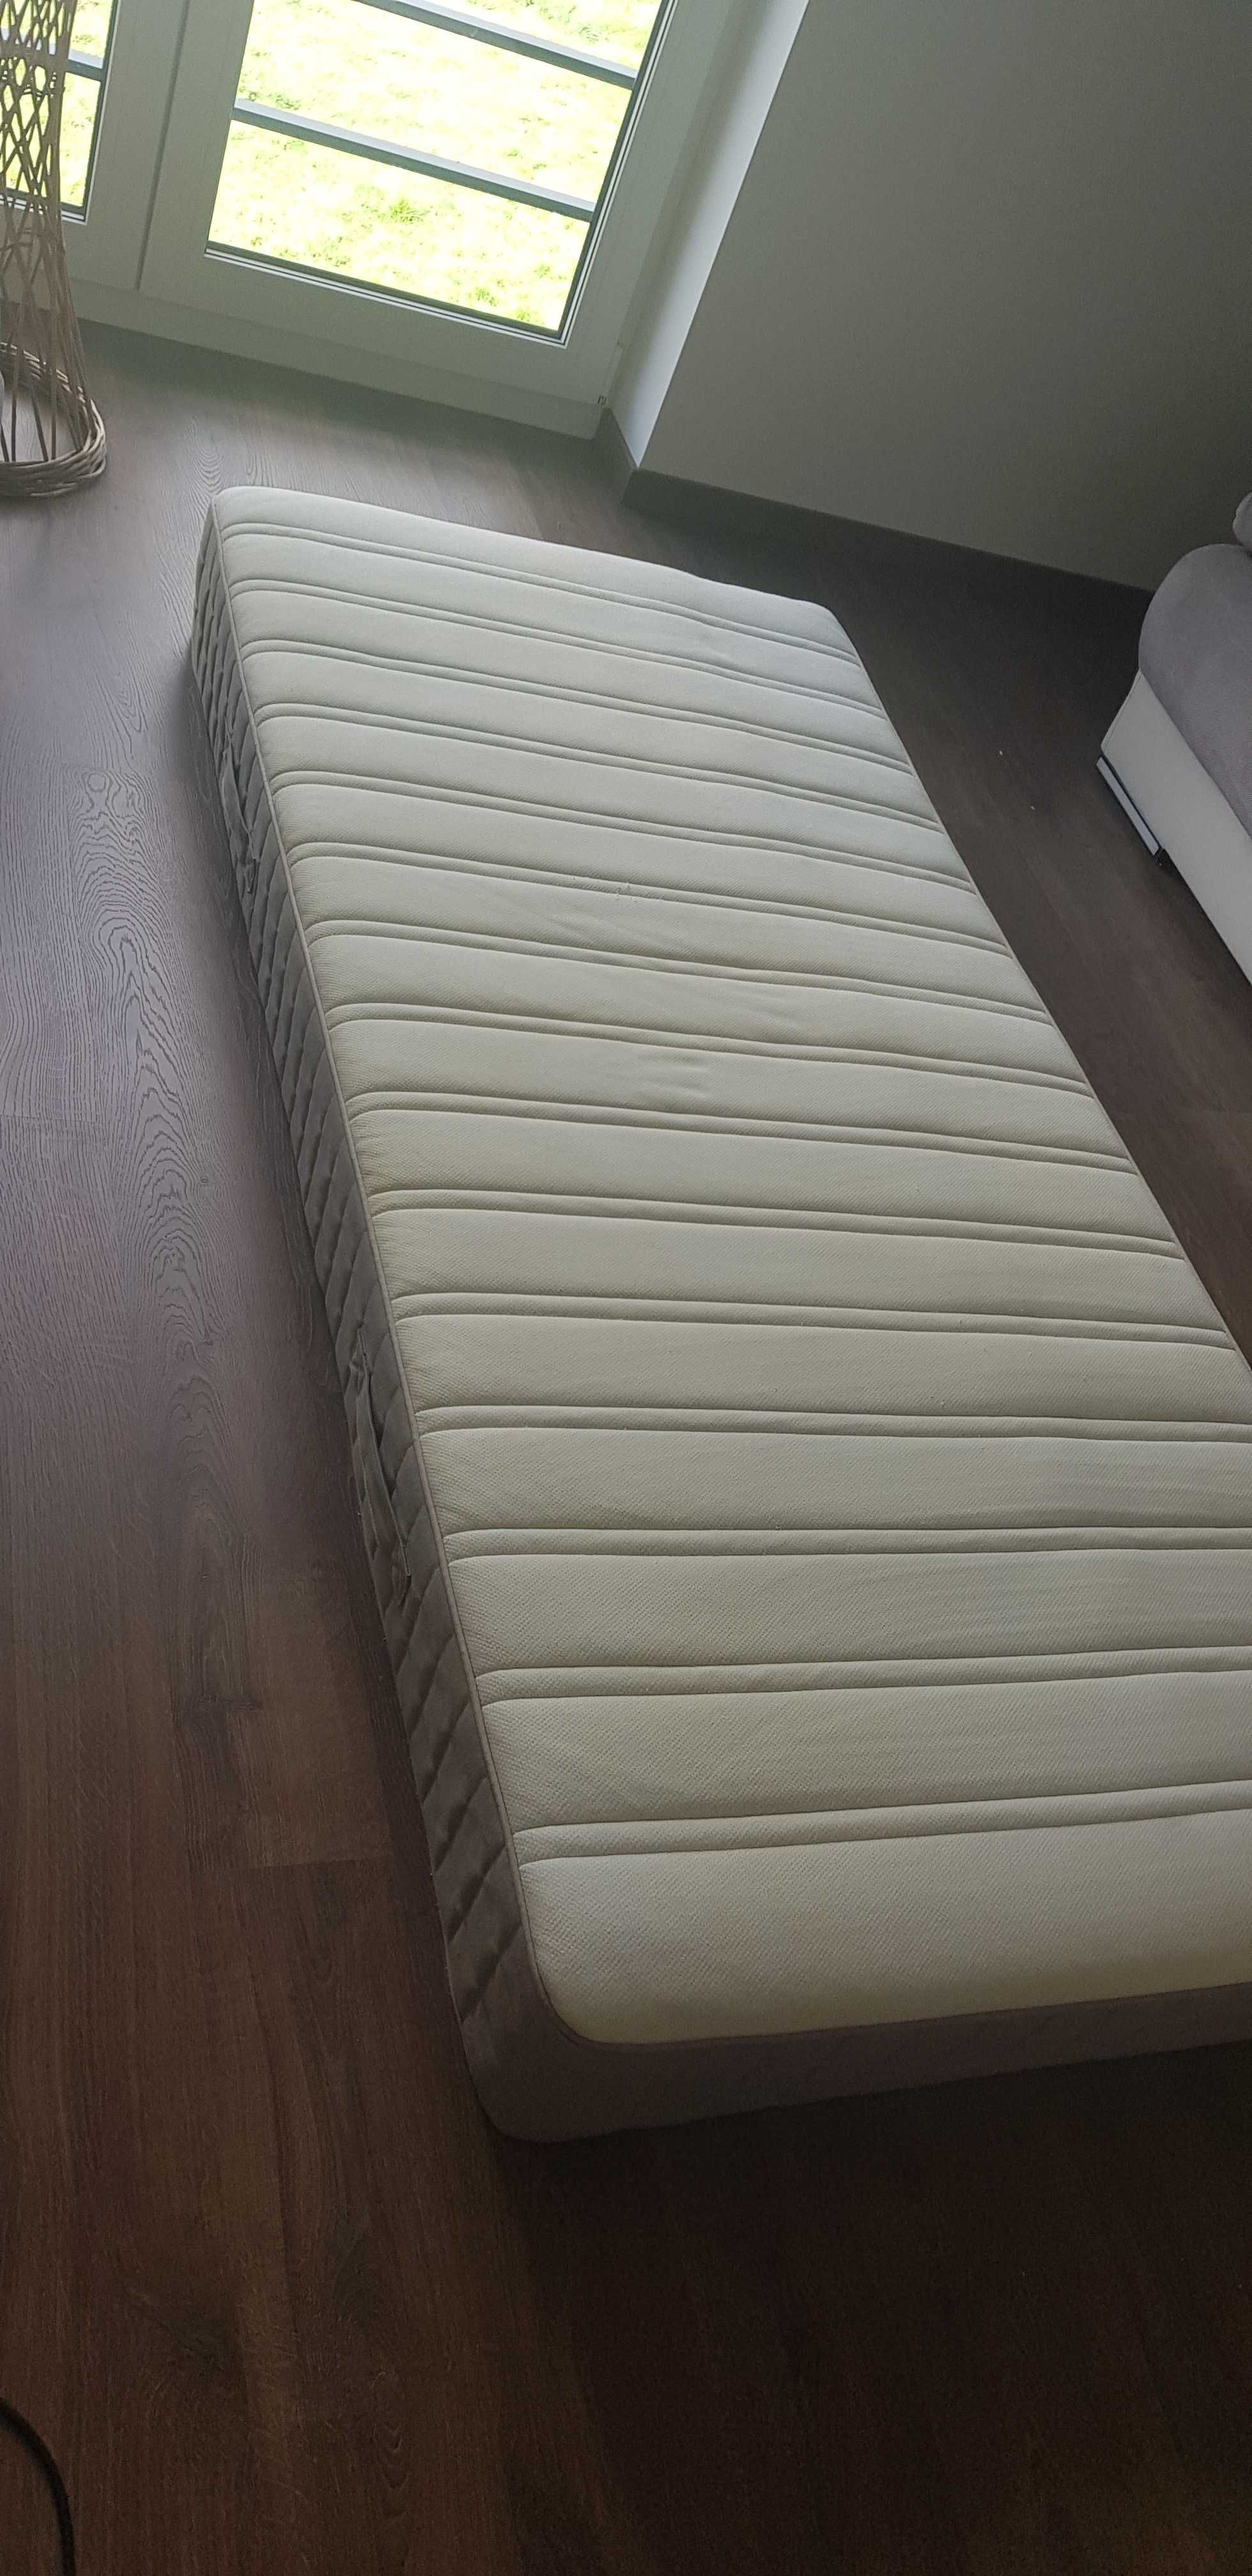 Sprzedam łóżko z materacem 90x200